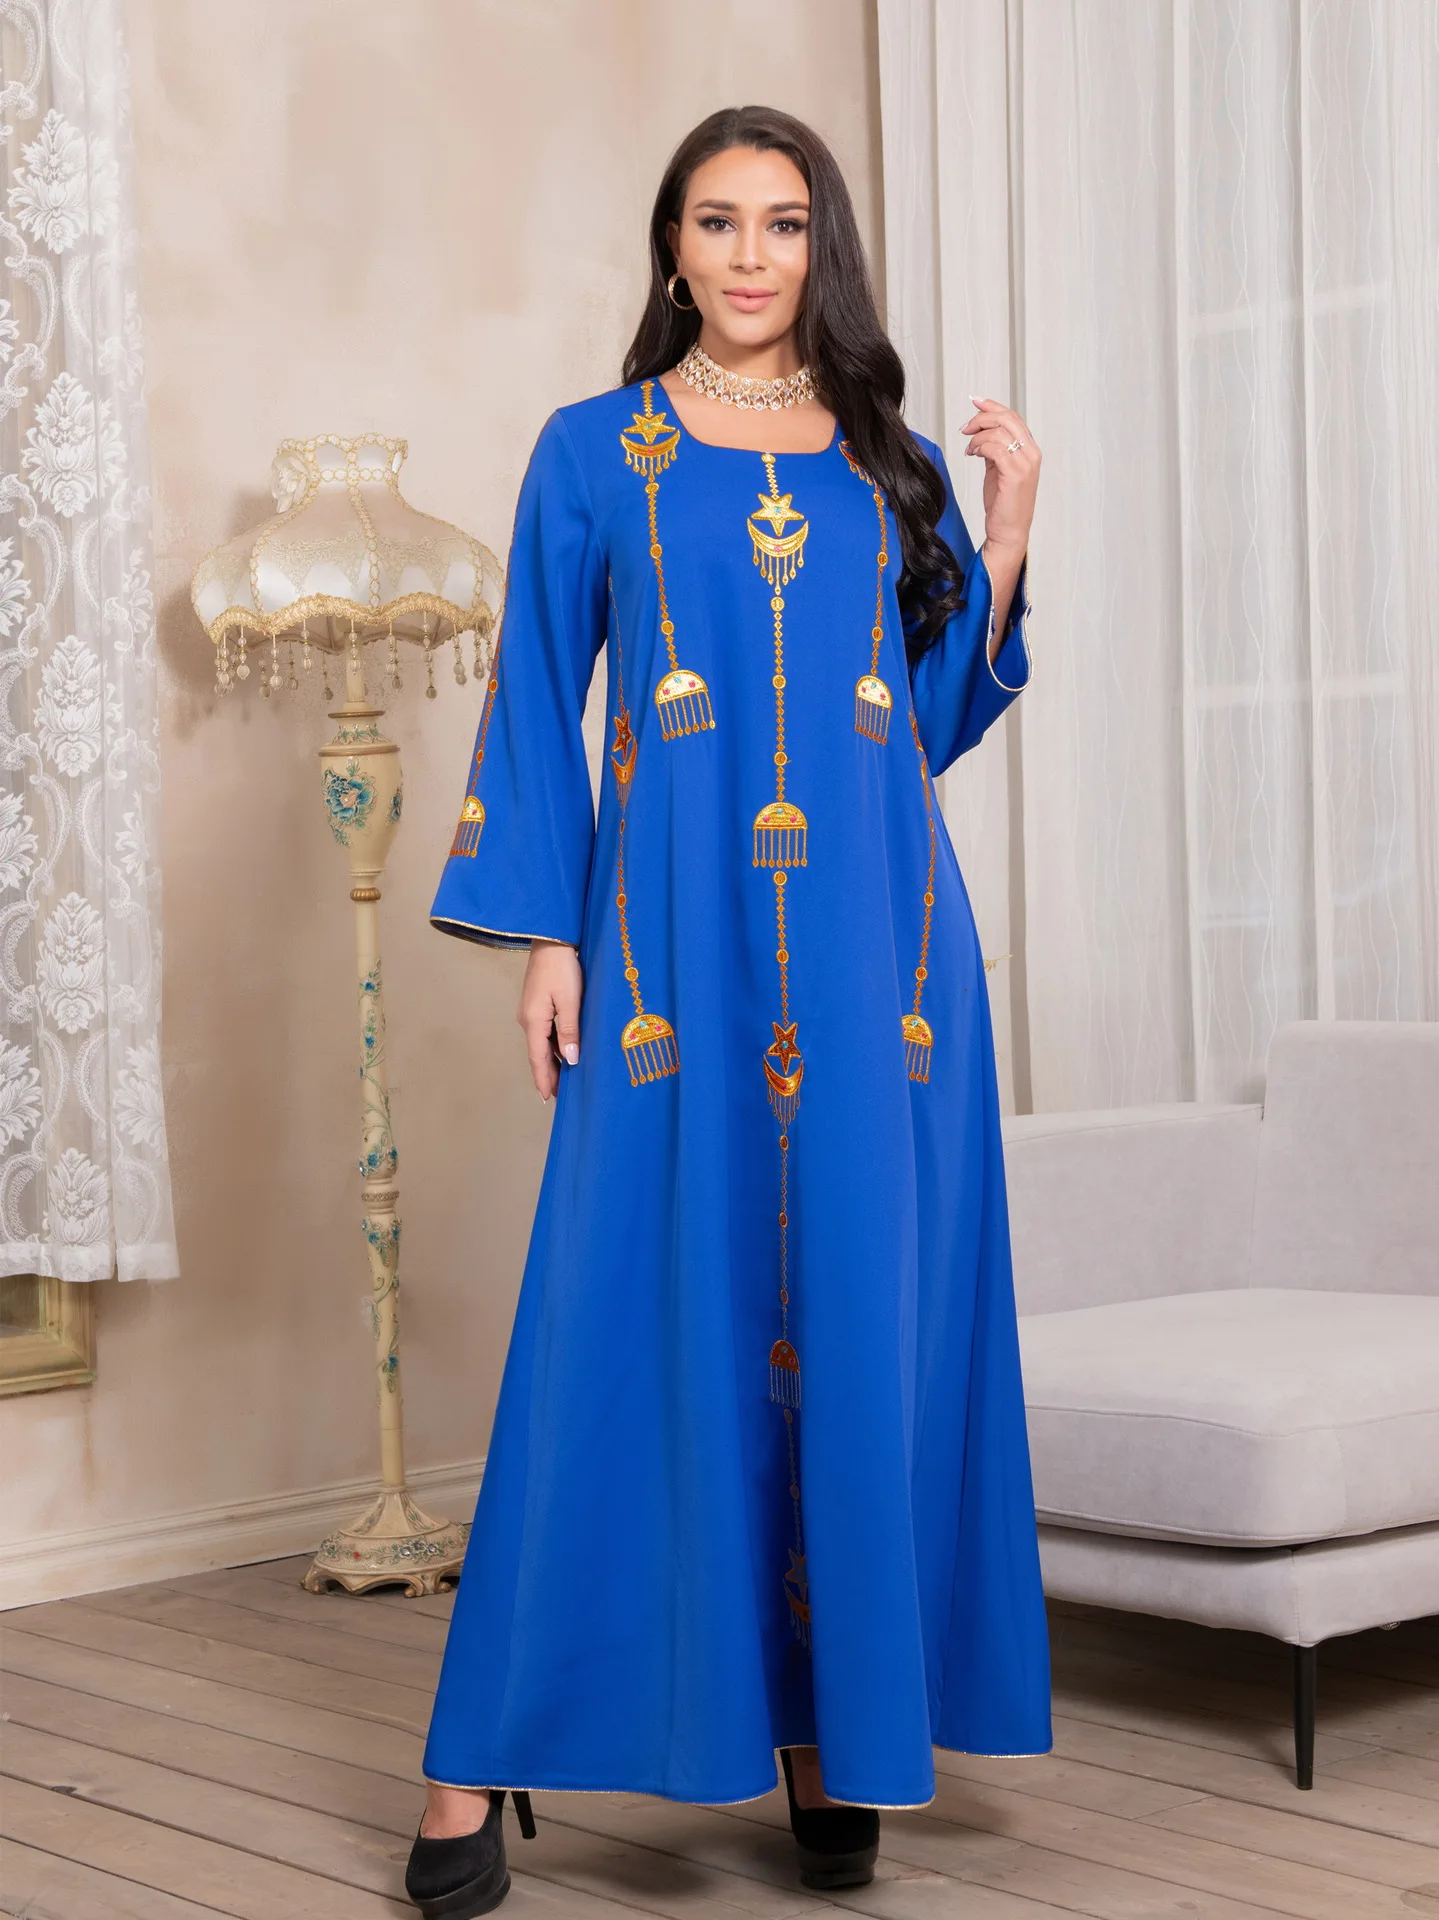 

Middle East Muslim Eid Al Fitr Embroidery Islamic Robe Arab Muslim Dress Dubai Abaya Turkey Long Dress Muslim Fashion Donsignet